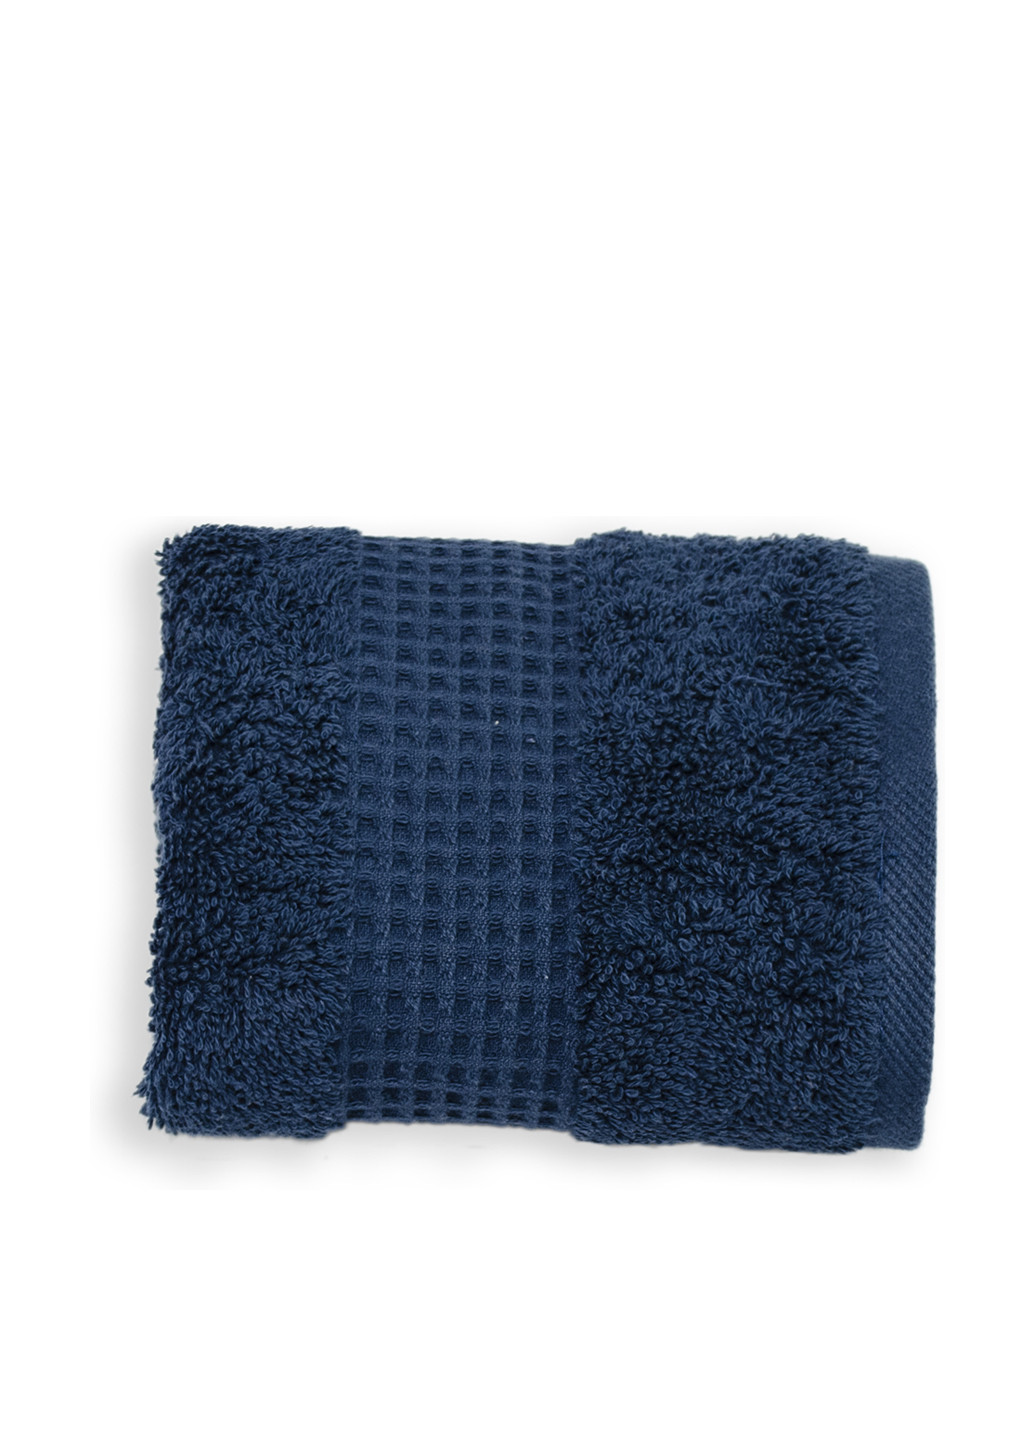 No Brand полотенце, 40х60 см однотонный темно-синий производство - Турция